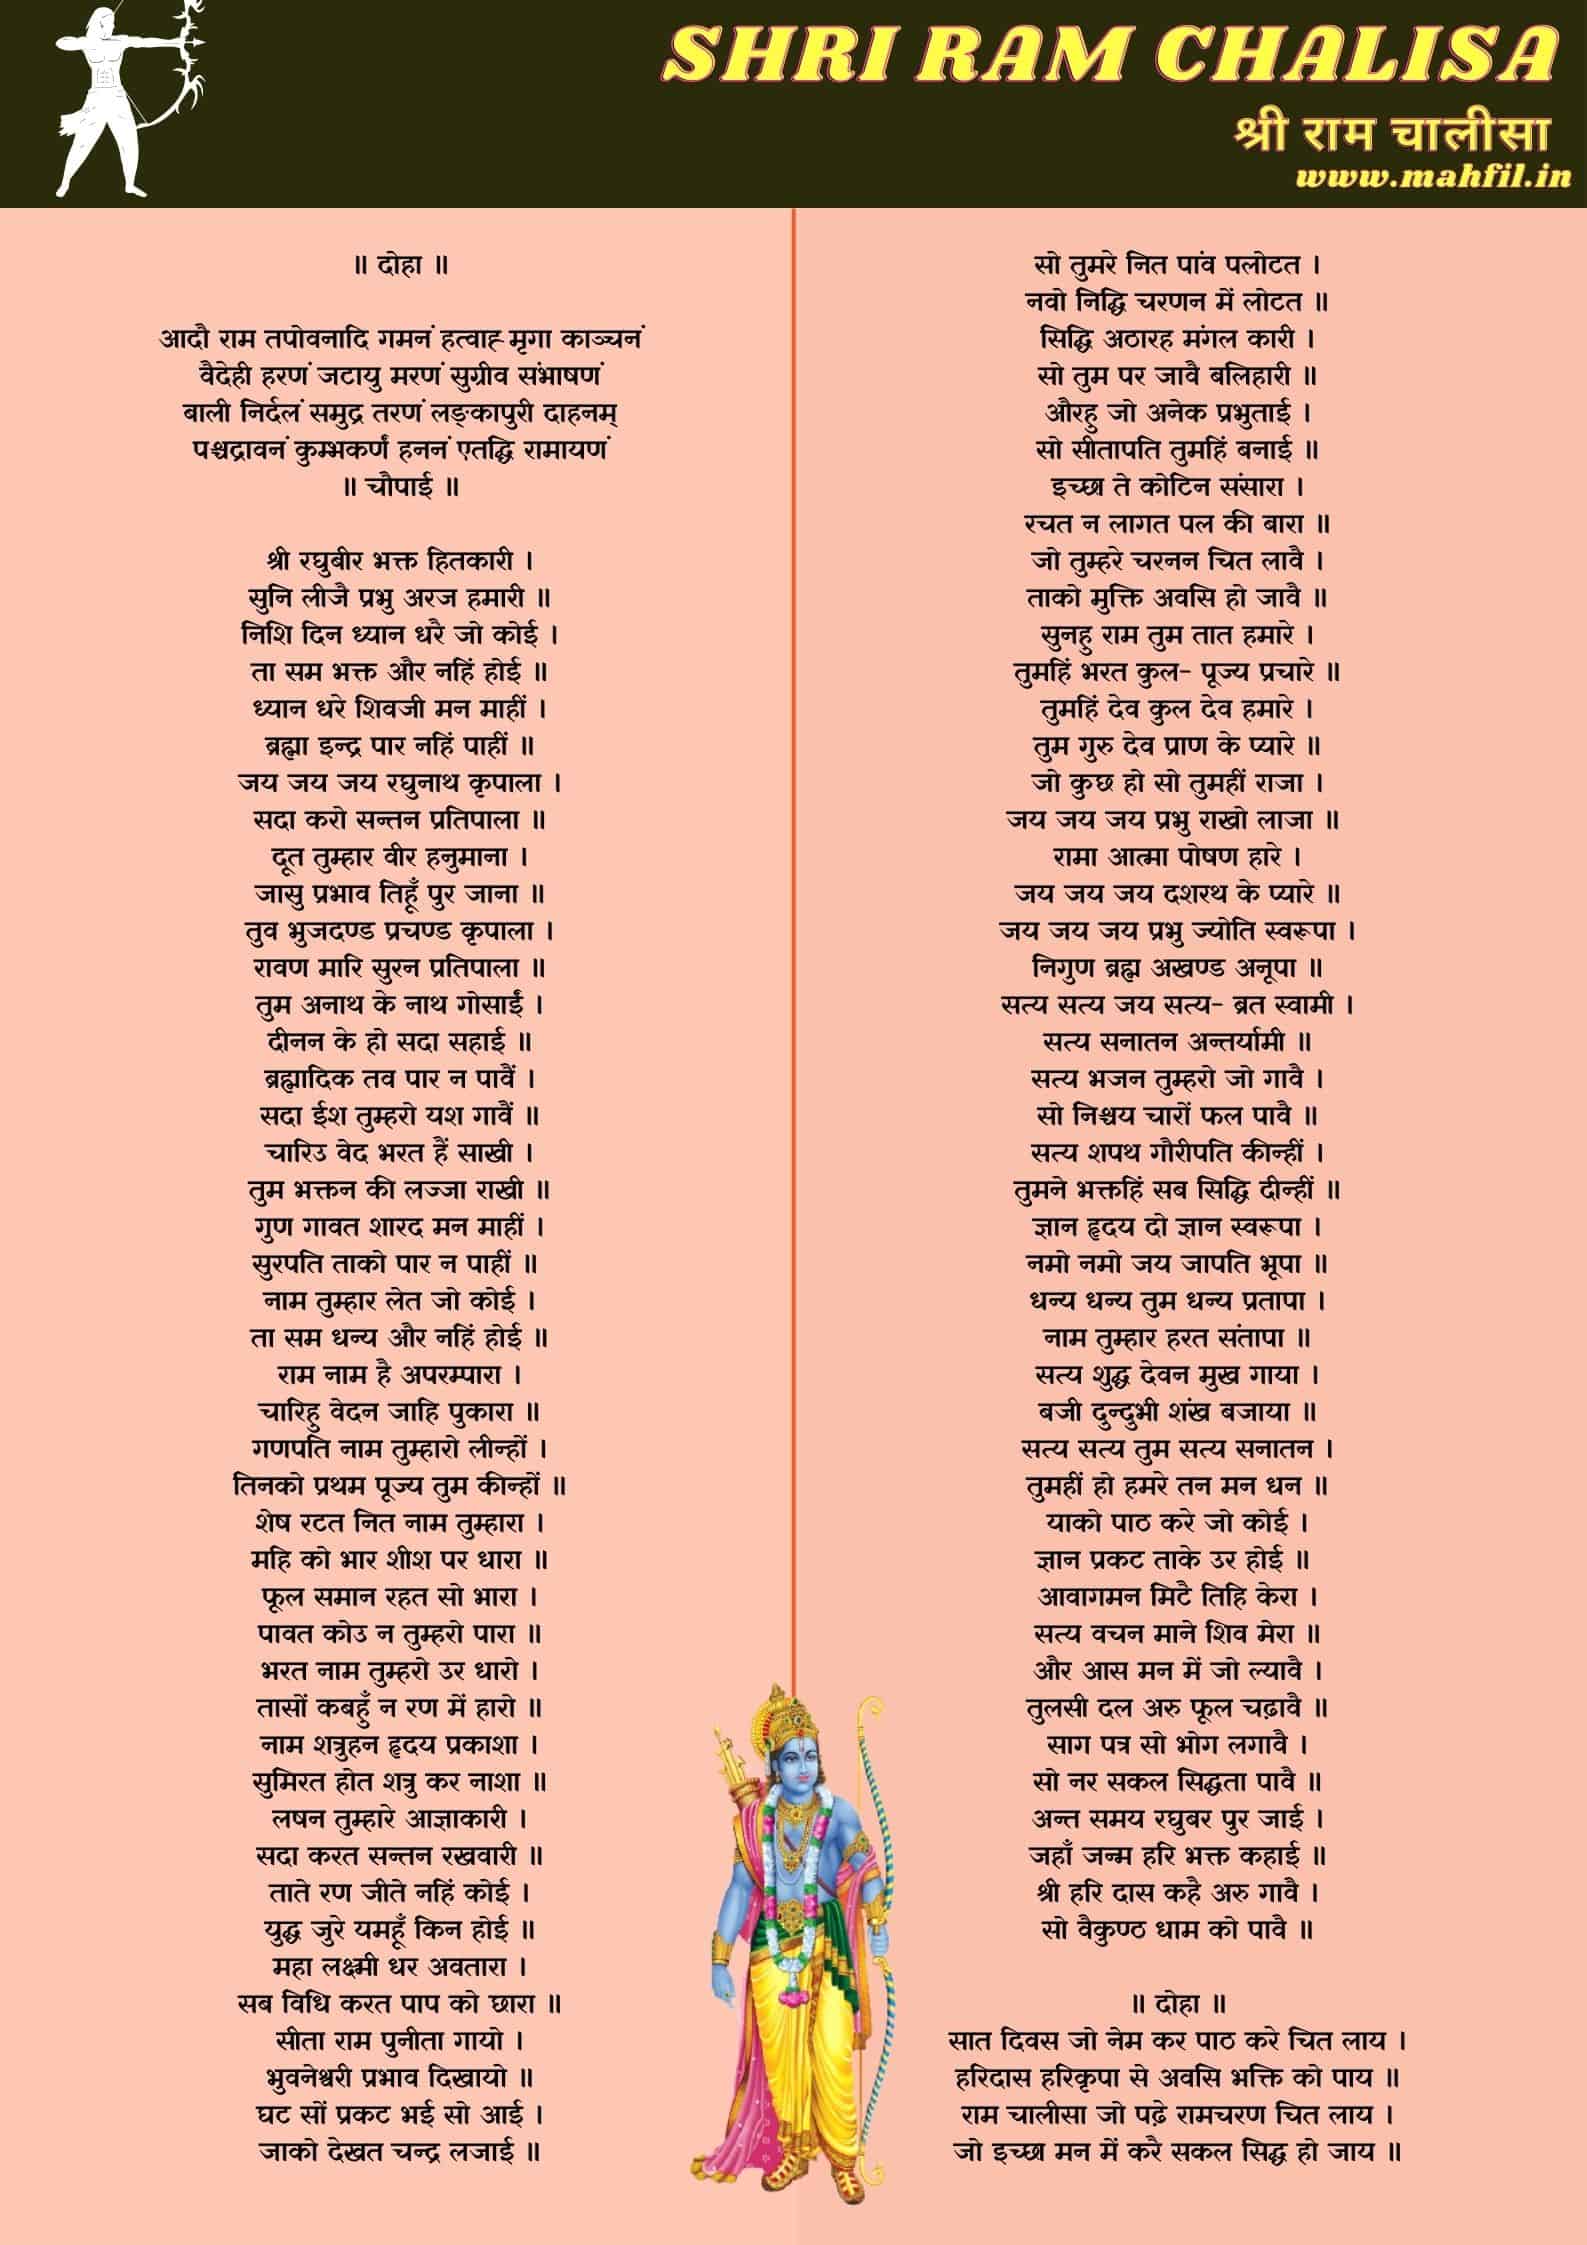 Shri Ram Chalisa Lyrics in Hindi